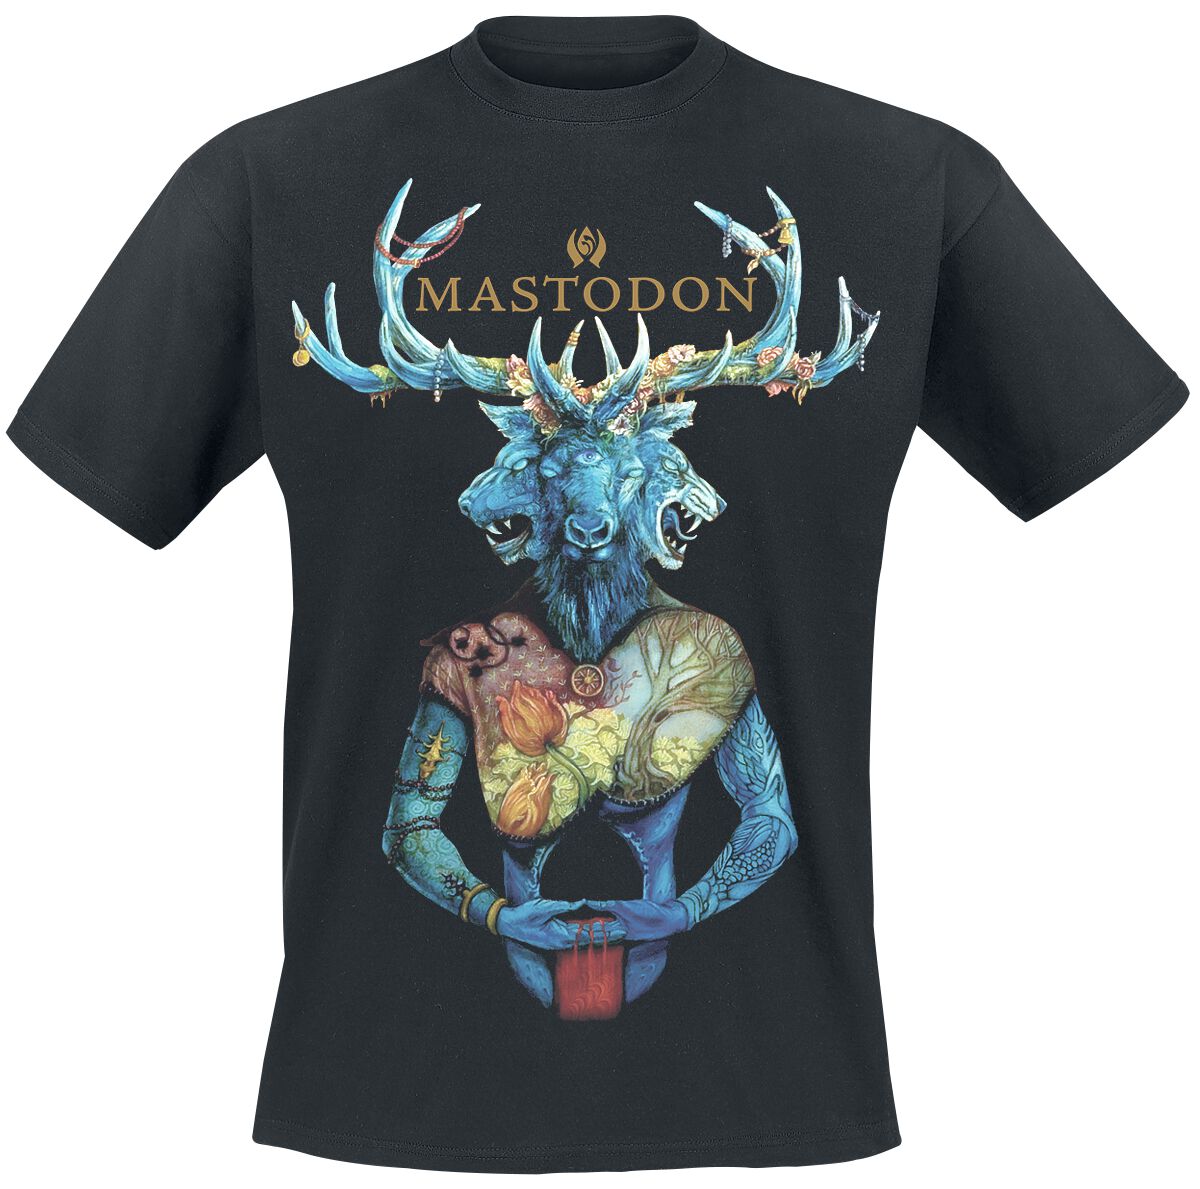 Mastodon T-Shirt - Blood mountain - S bis XXL - für Männer - Größe S - schwarz  - Lizenziertes Merchandise!